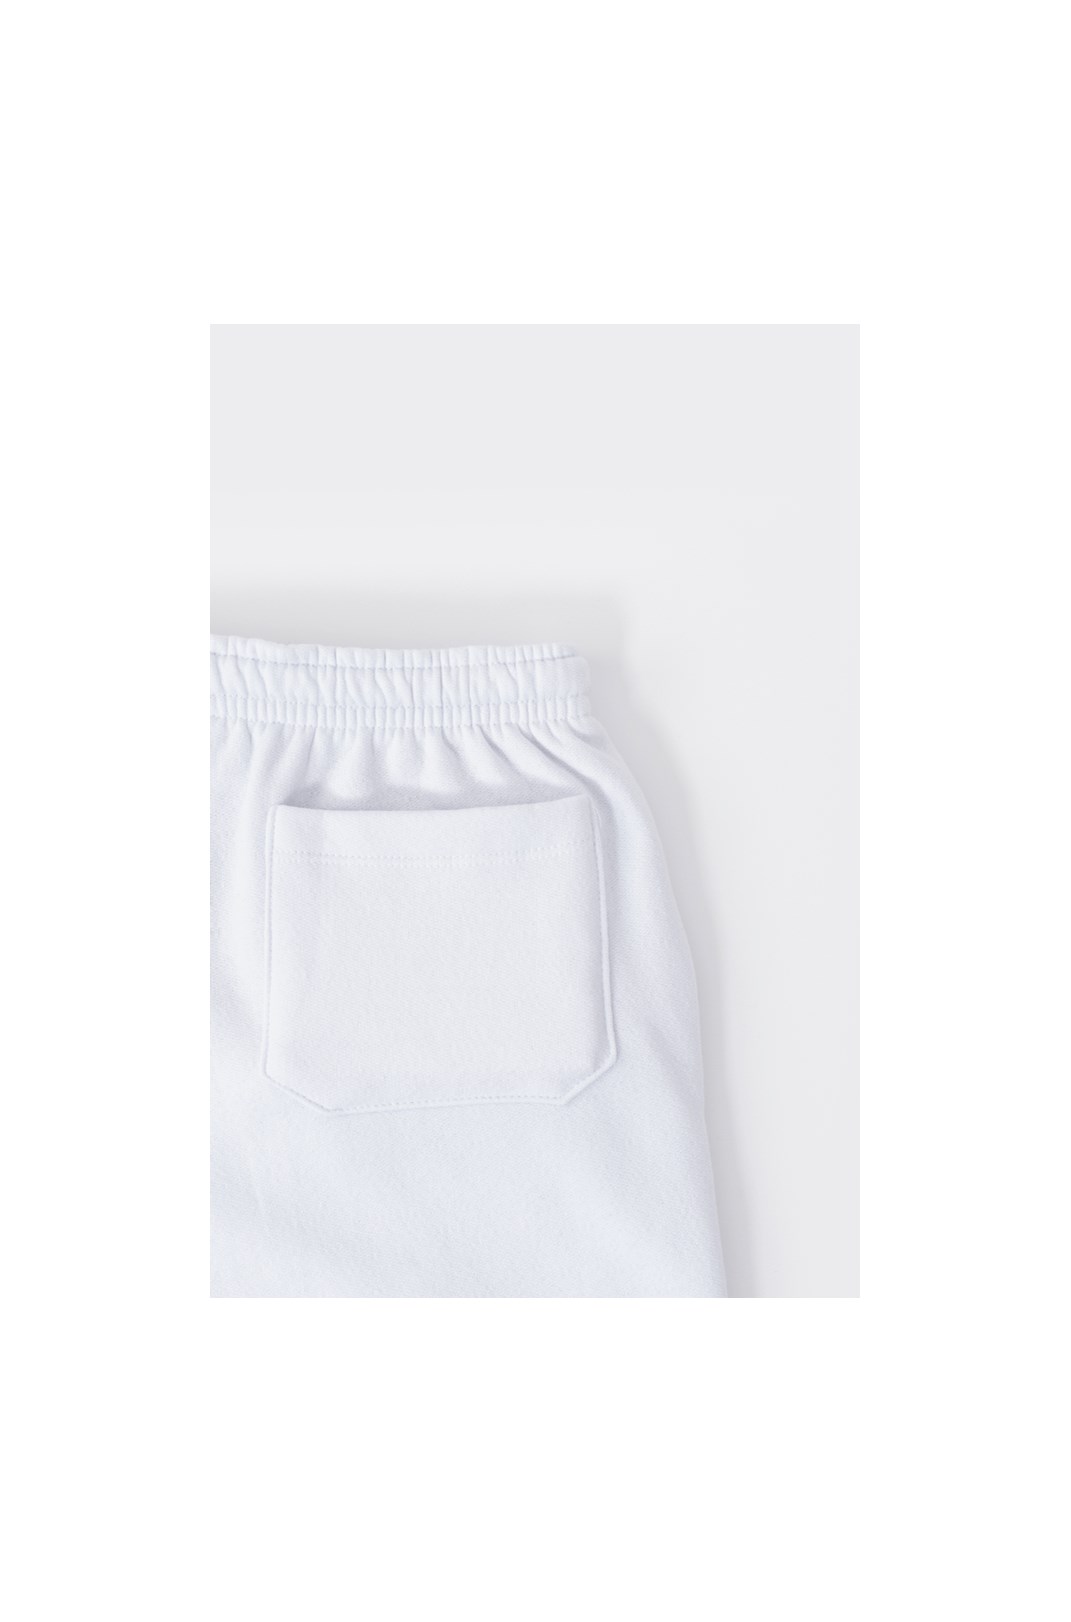 Shorts Moletom Appprove Mirage Branco